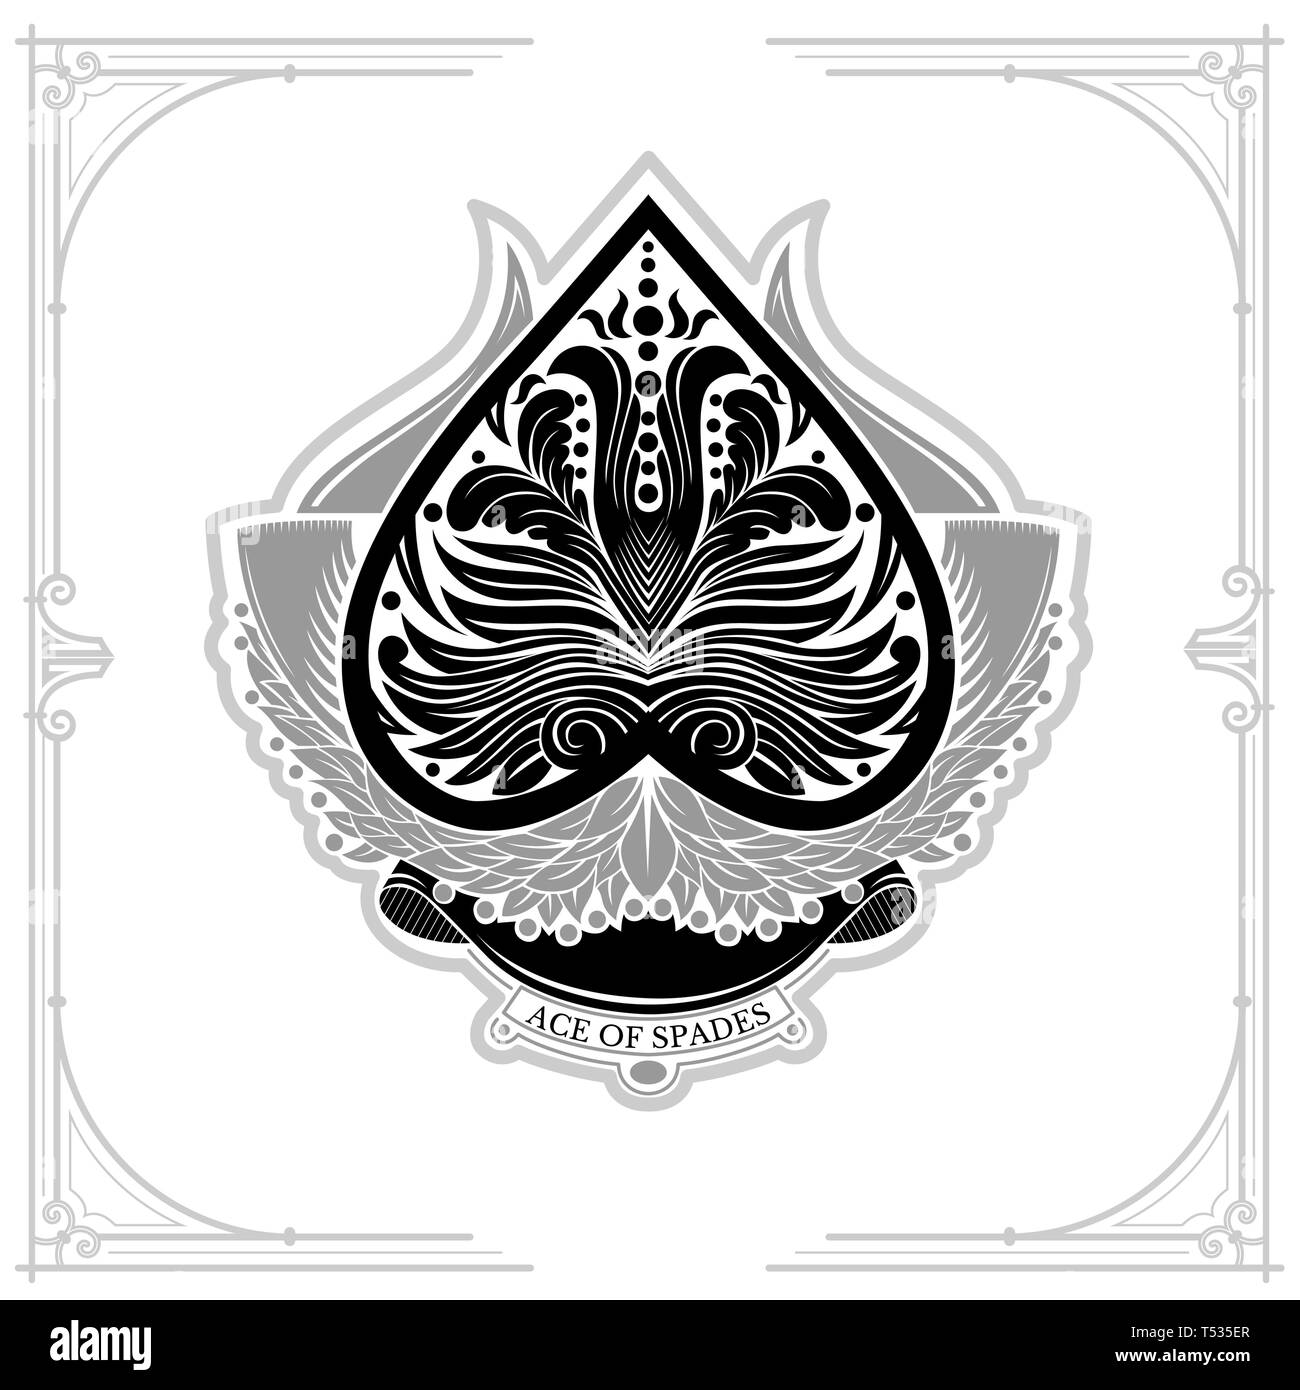 Ace of Spades mit Lorbeerkranz und floralen Muster. Schwarz auf Weiß Stock Vektor